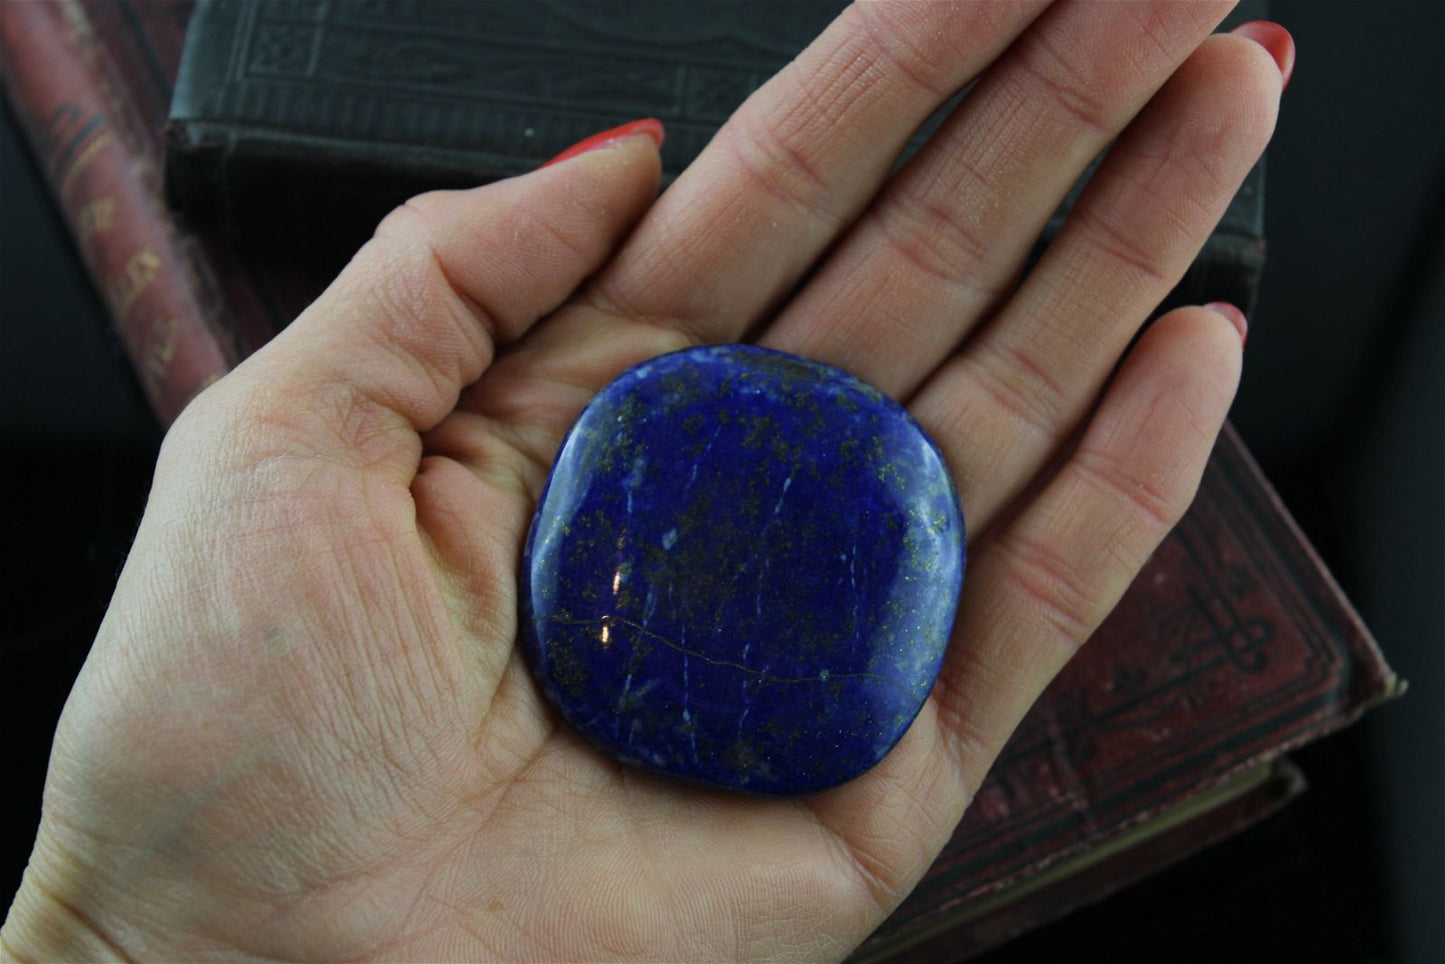 Galet en lapis lazuli photo contractuelle - Aurore Lune 